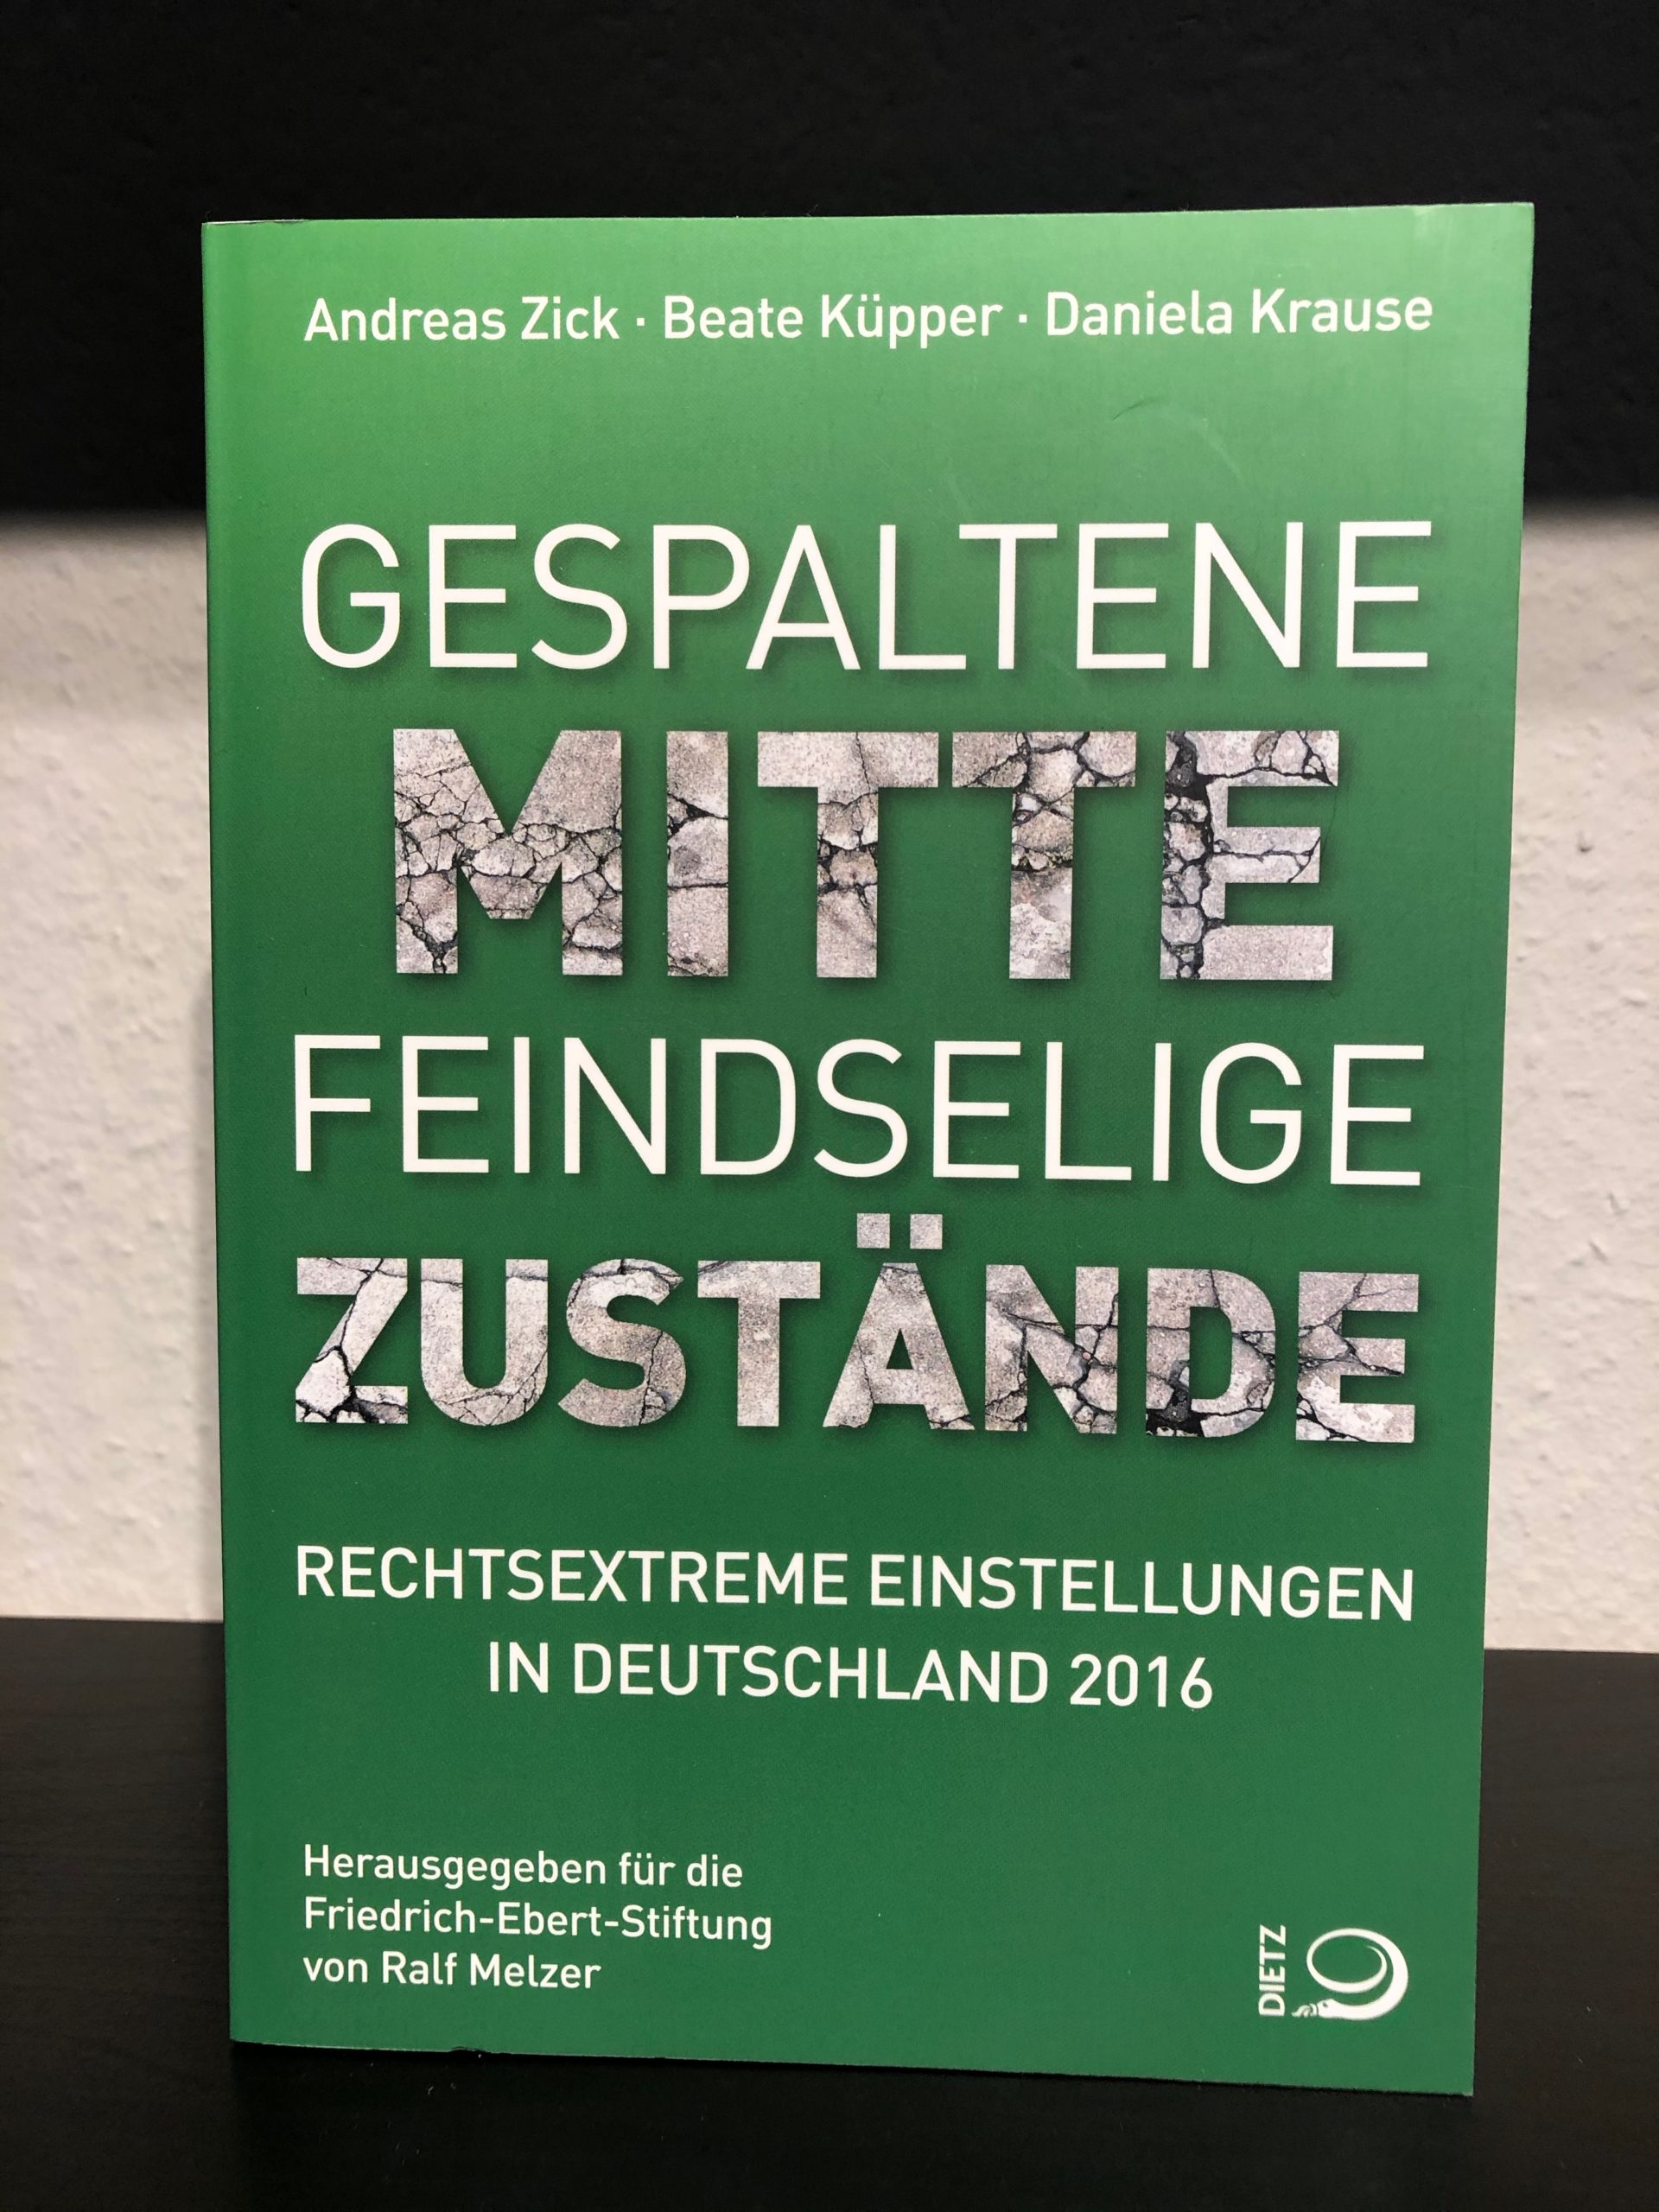 Gespaltene Mitte - Feindselige Zustände Rechtsextreme Einstellungen in Deutschland 2016 - Andreas Zick, Beate Küpper, Danilela Krause-image